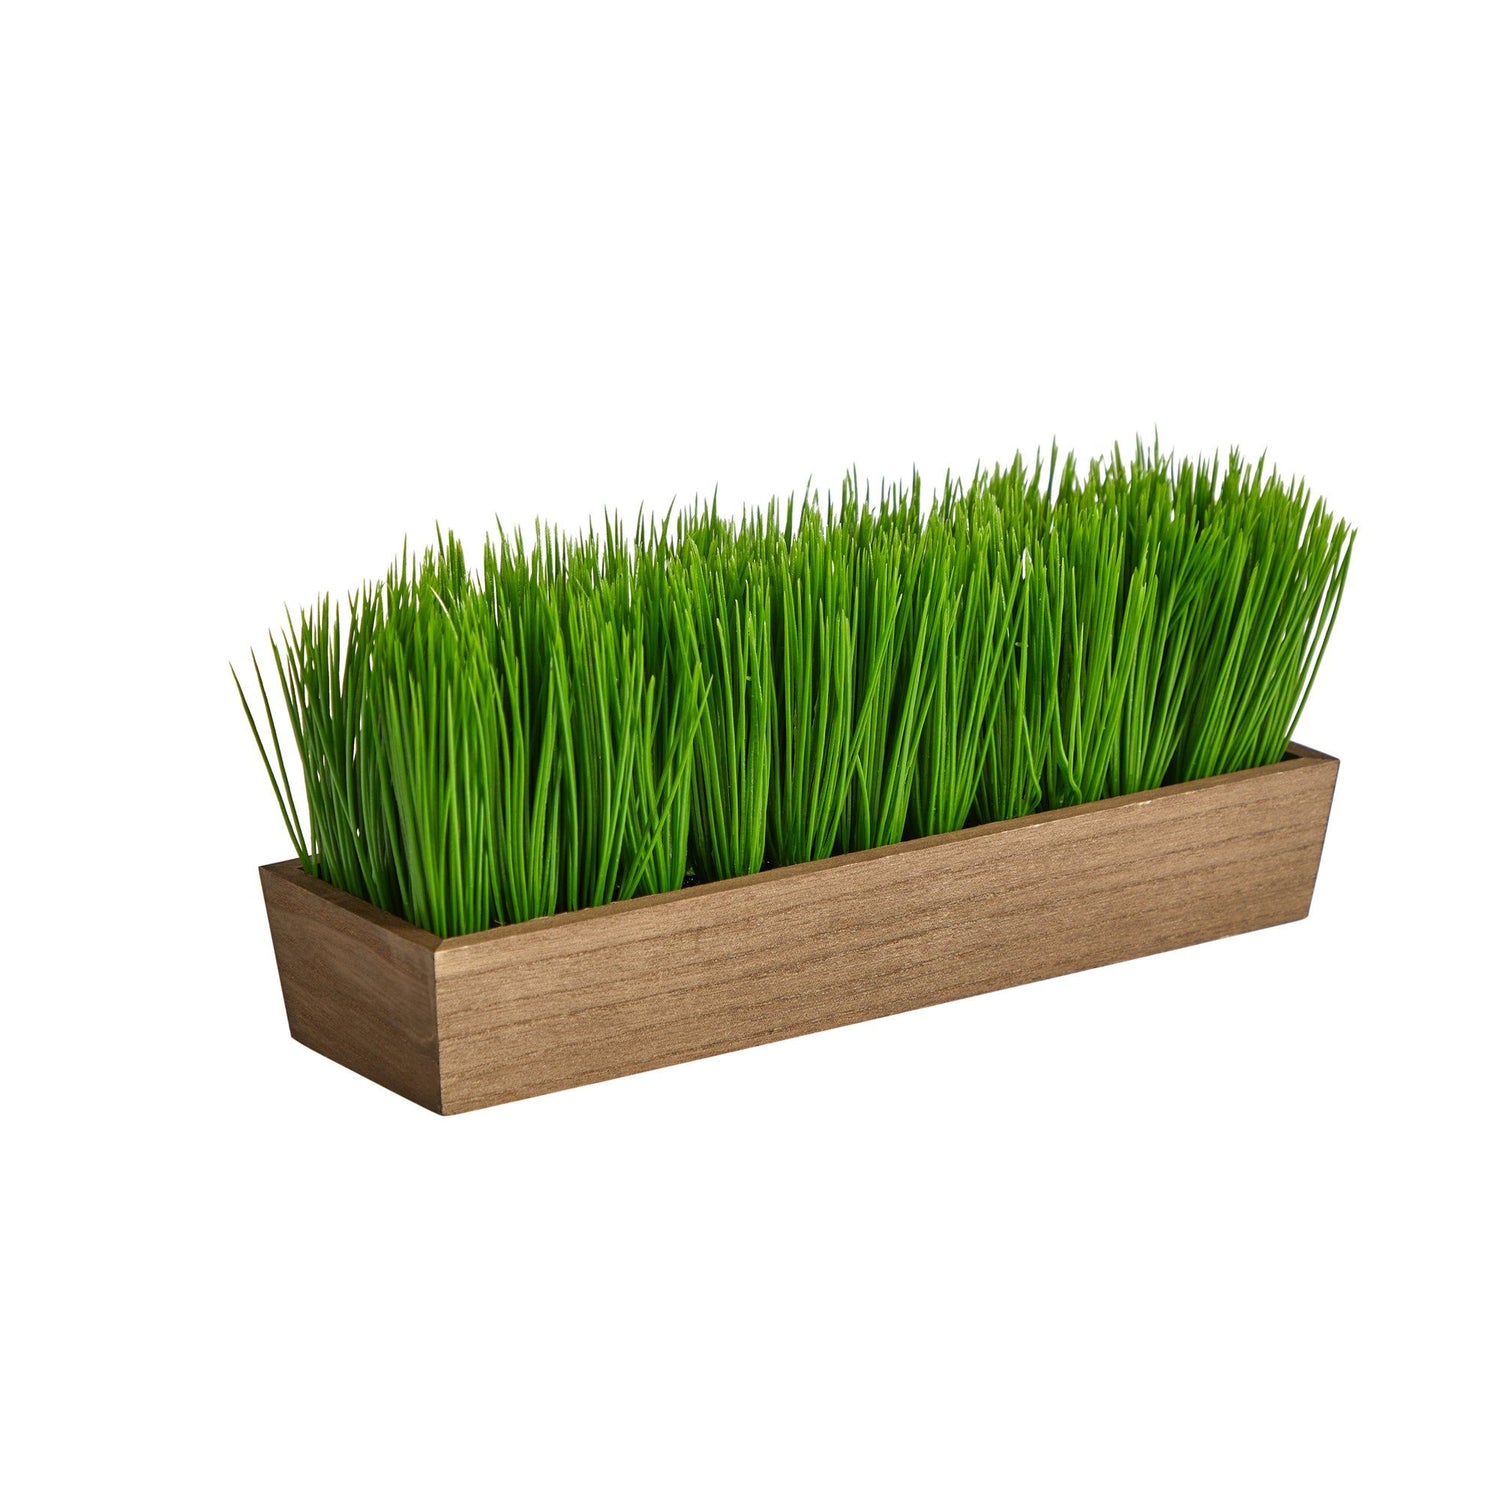 12” Grass Artificial Plant in Decorative Planter